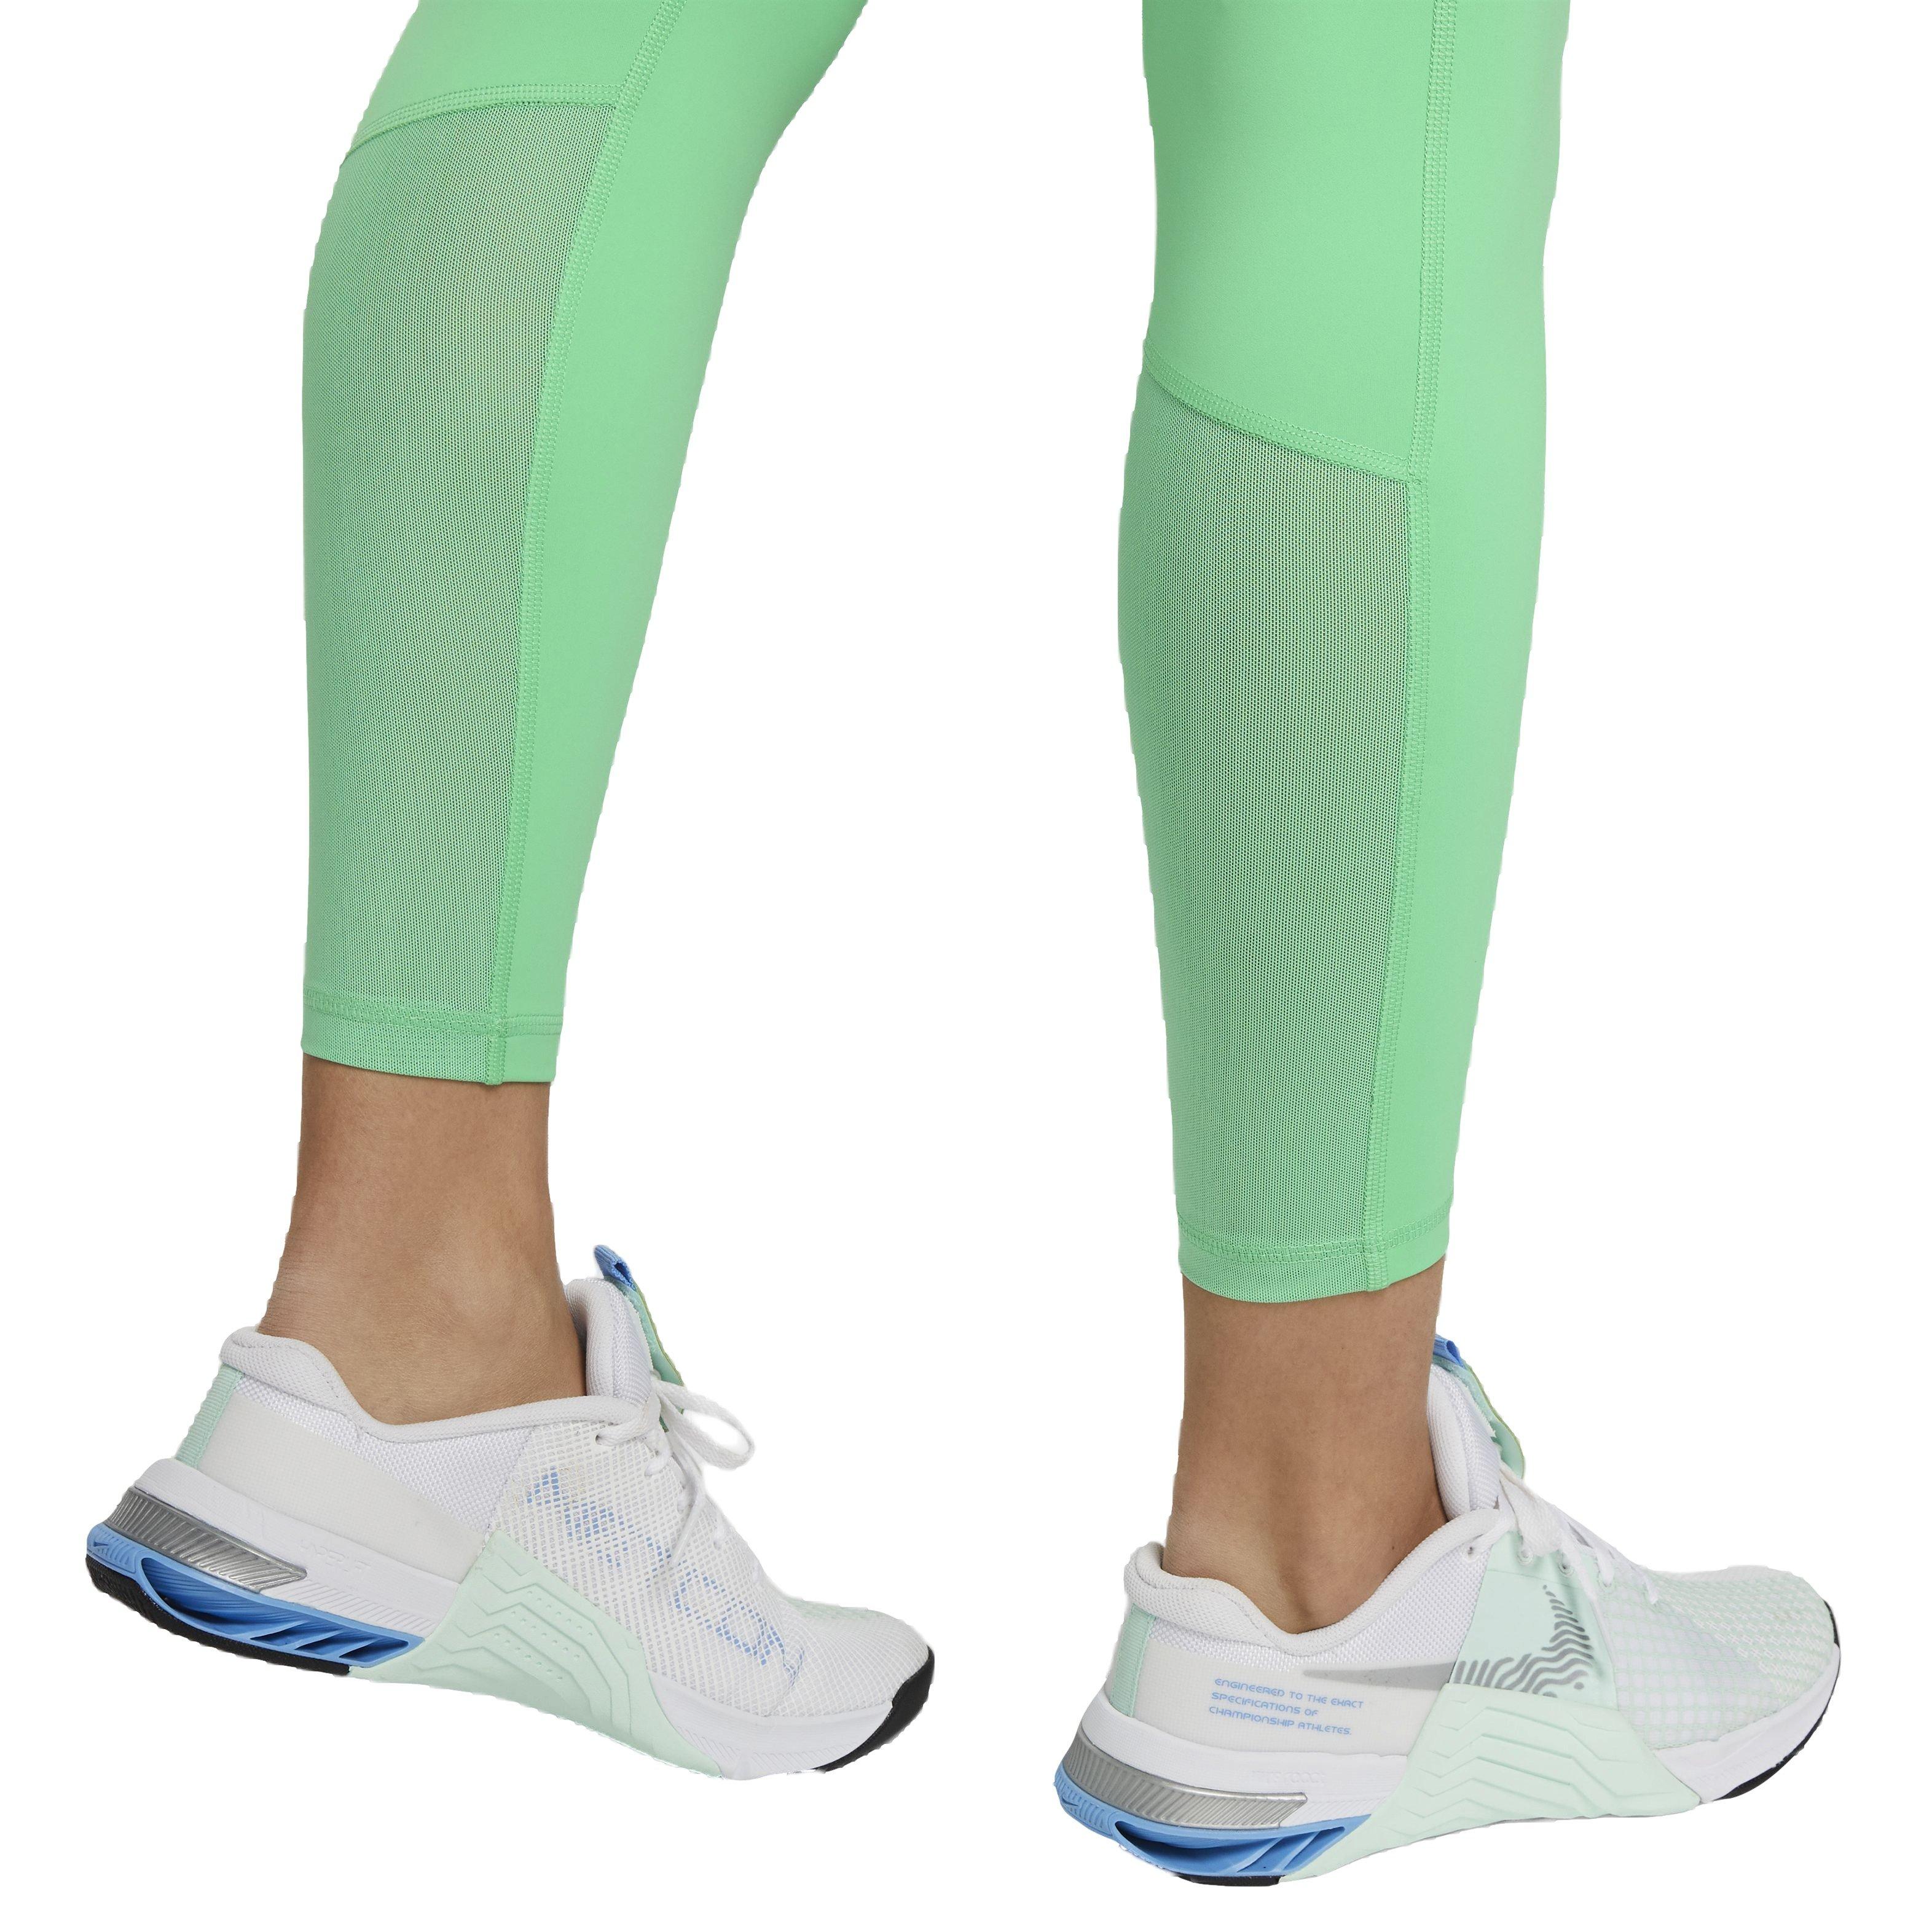 Nike Women's Pro 365 High-Waisted 7/8 Mesh Panel Leggings in Green